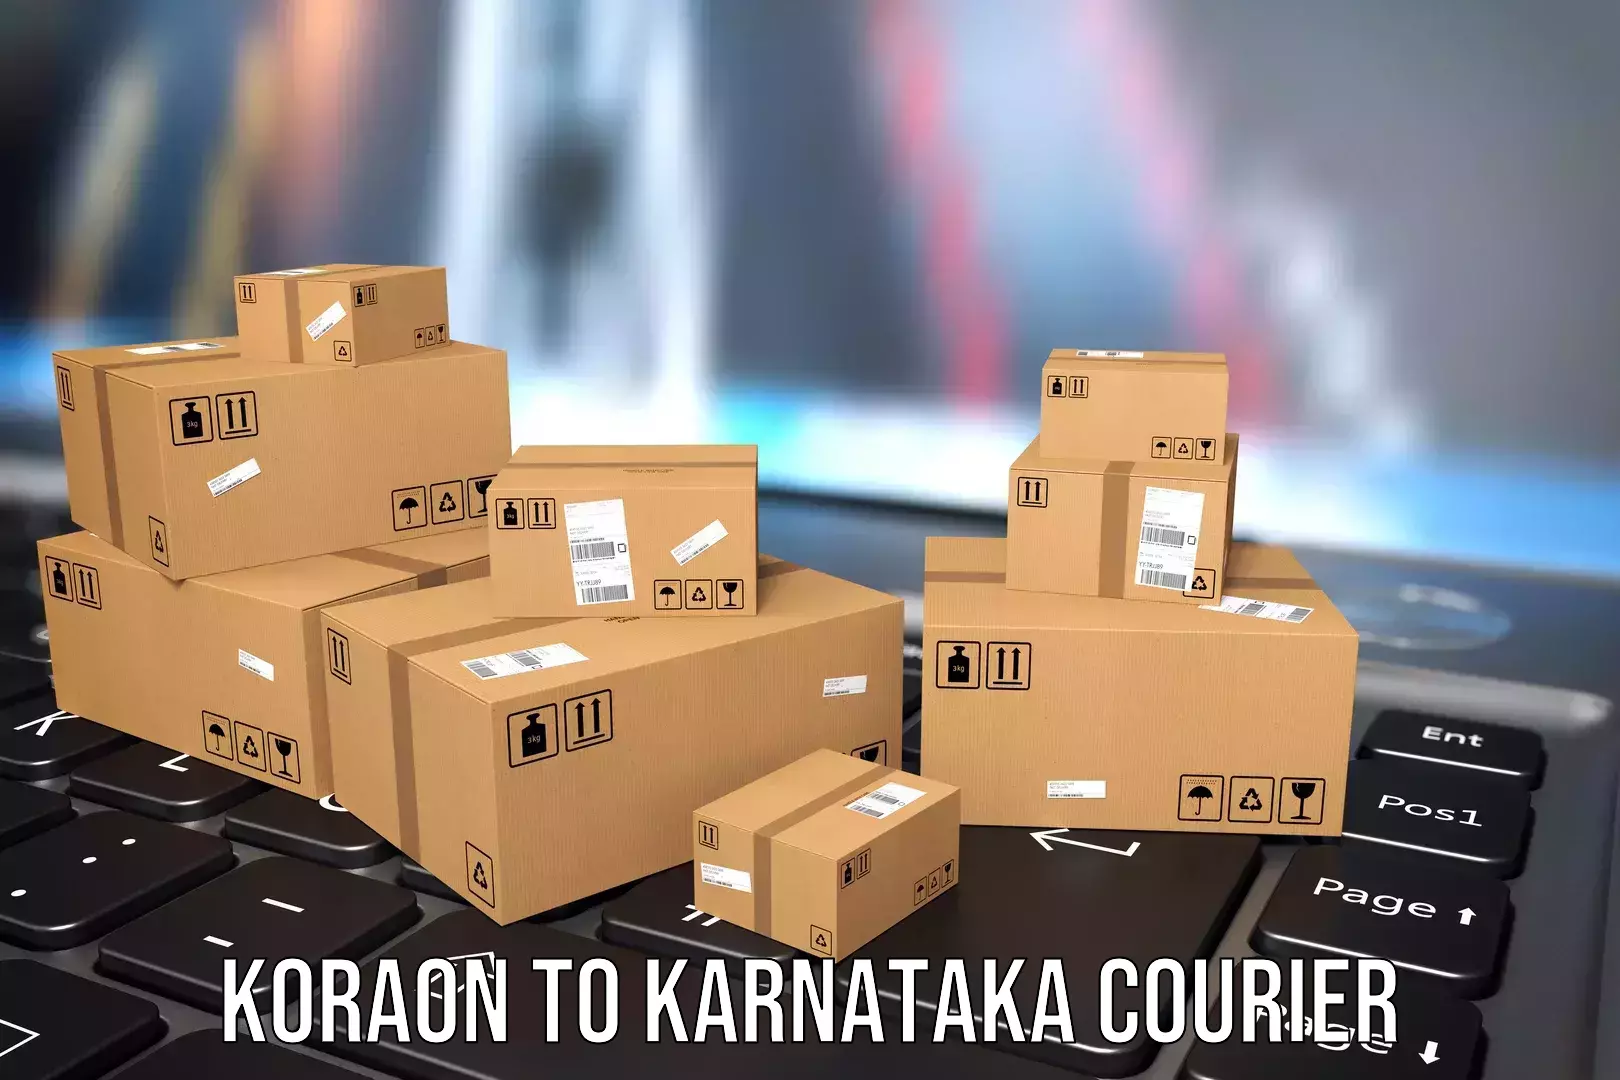 Luggage shipment specialists Koraon to Bangalore